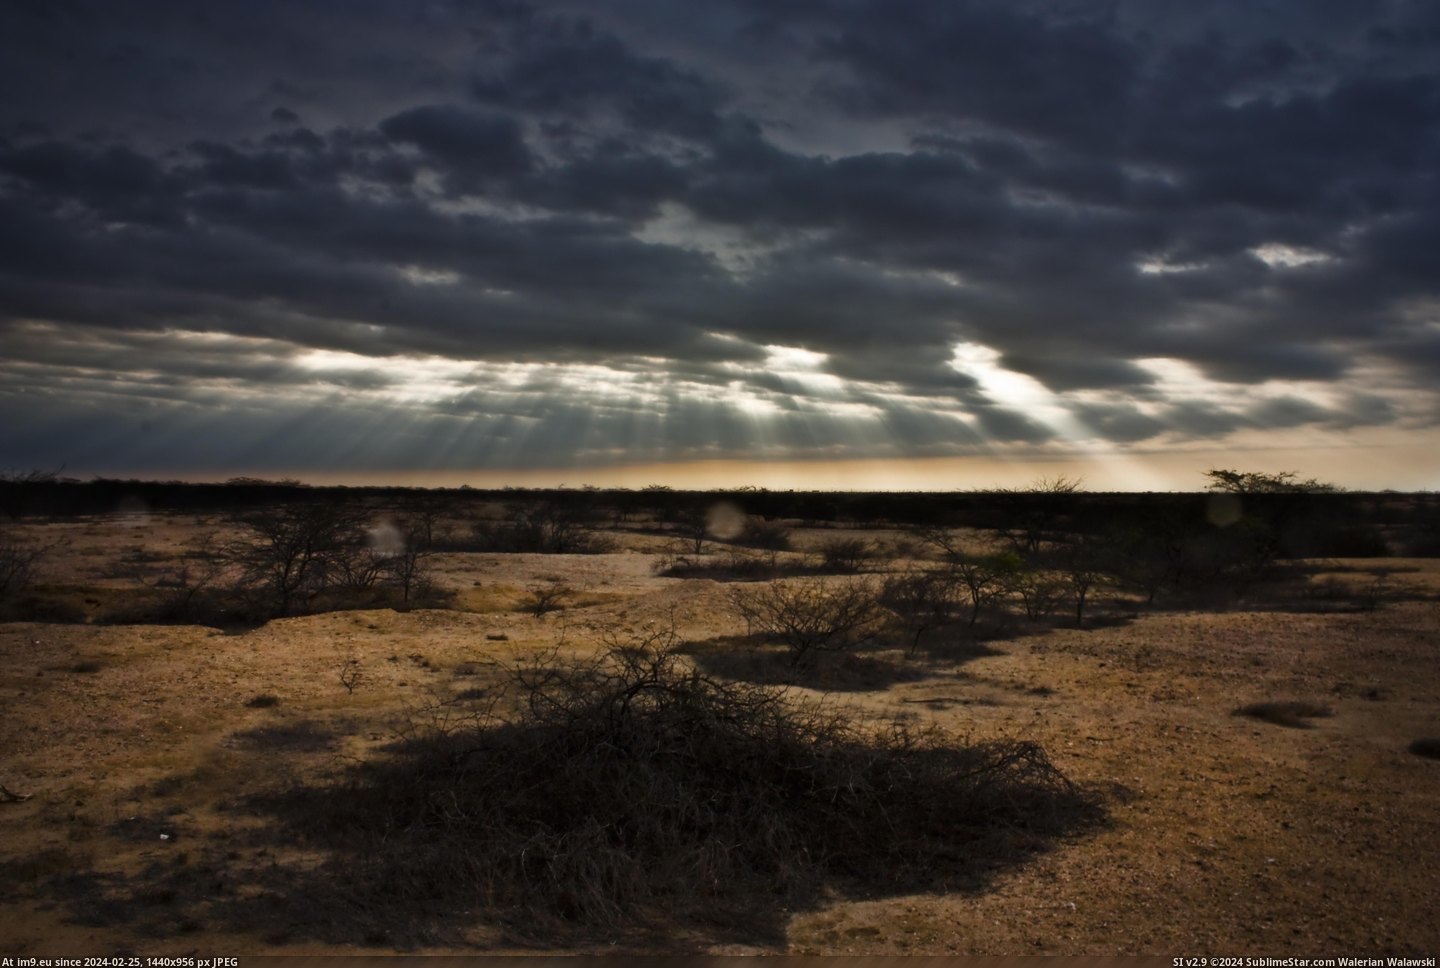 #Desert #4272x2848 #Sechura #Nicolas #Corbetto [Earthporn] Sechura Desert, Perú [4272x2848] by Nicolas Corbetto Pic. (Image of album My r/EARTHPORN favs))